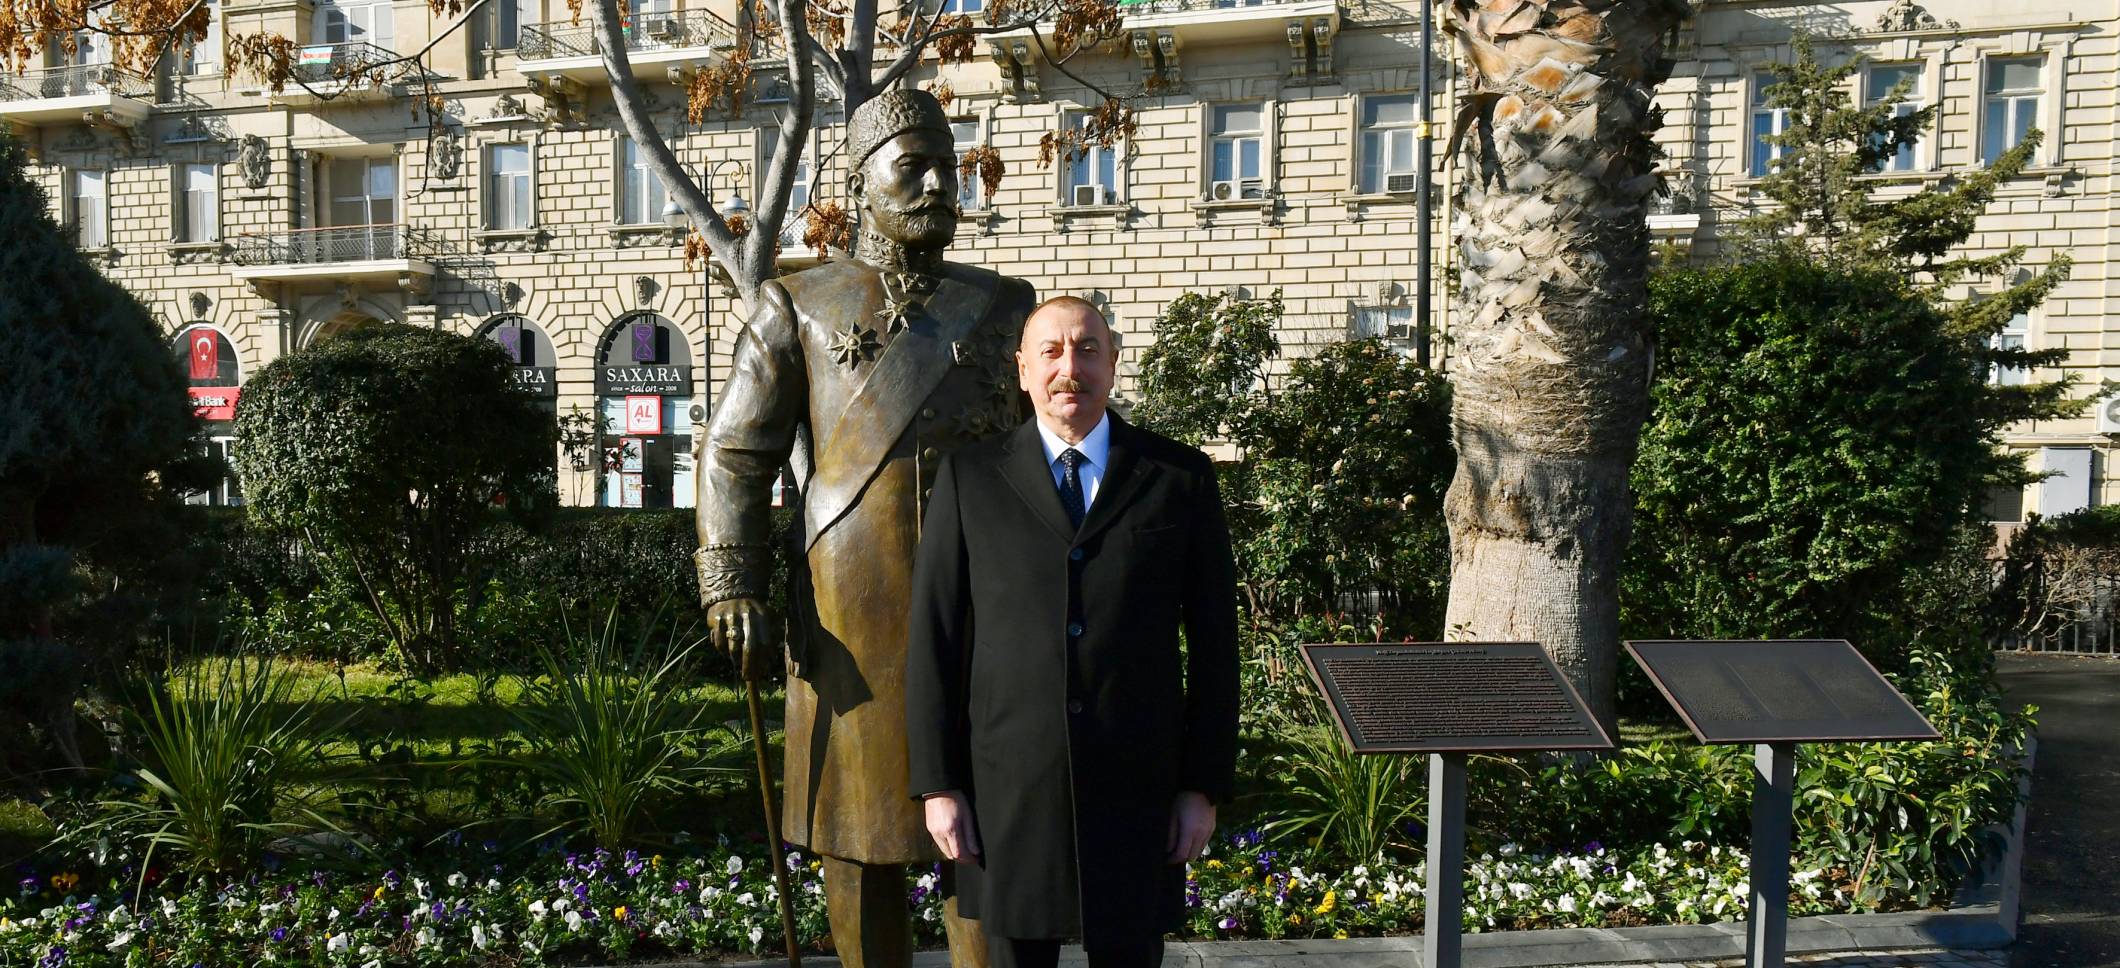 Ильхам Алиев принял участие в открытии памятника меценату Гаджи Зейналабдину Тагиеву в Баку